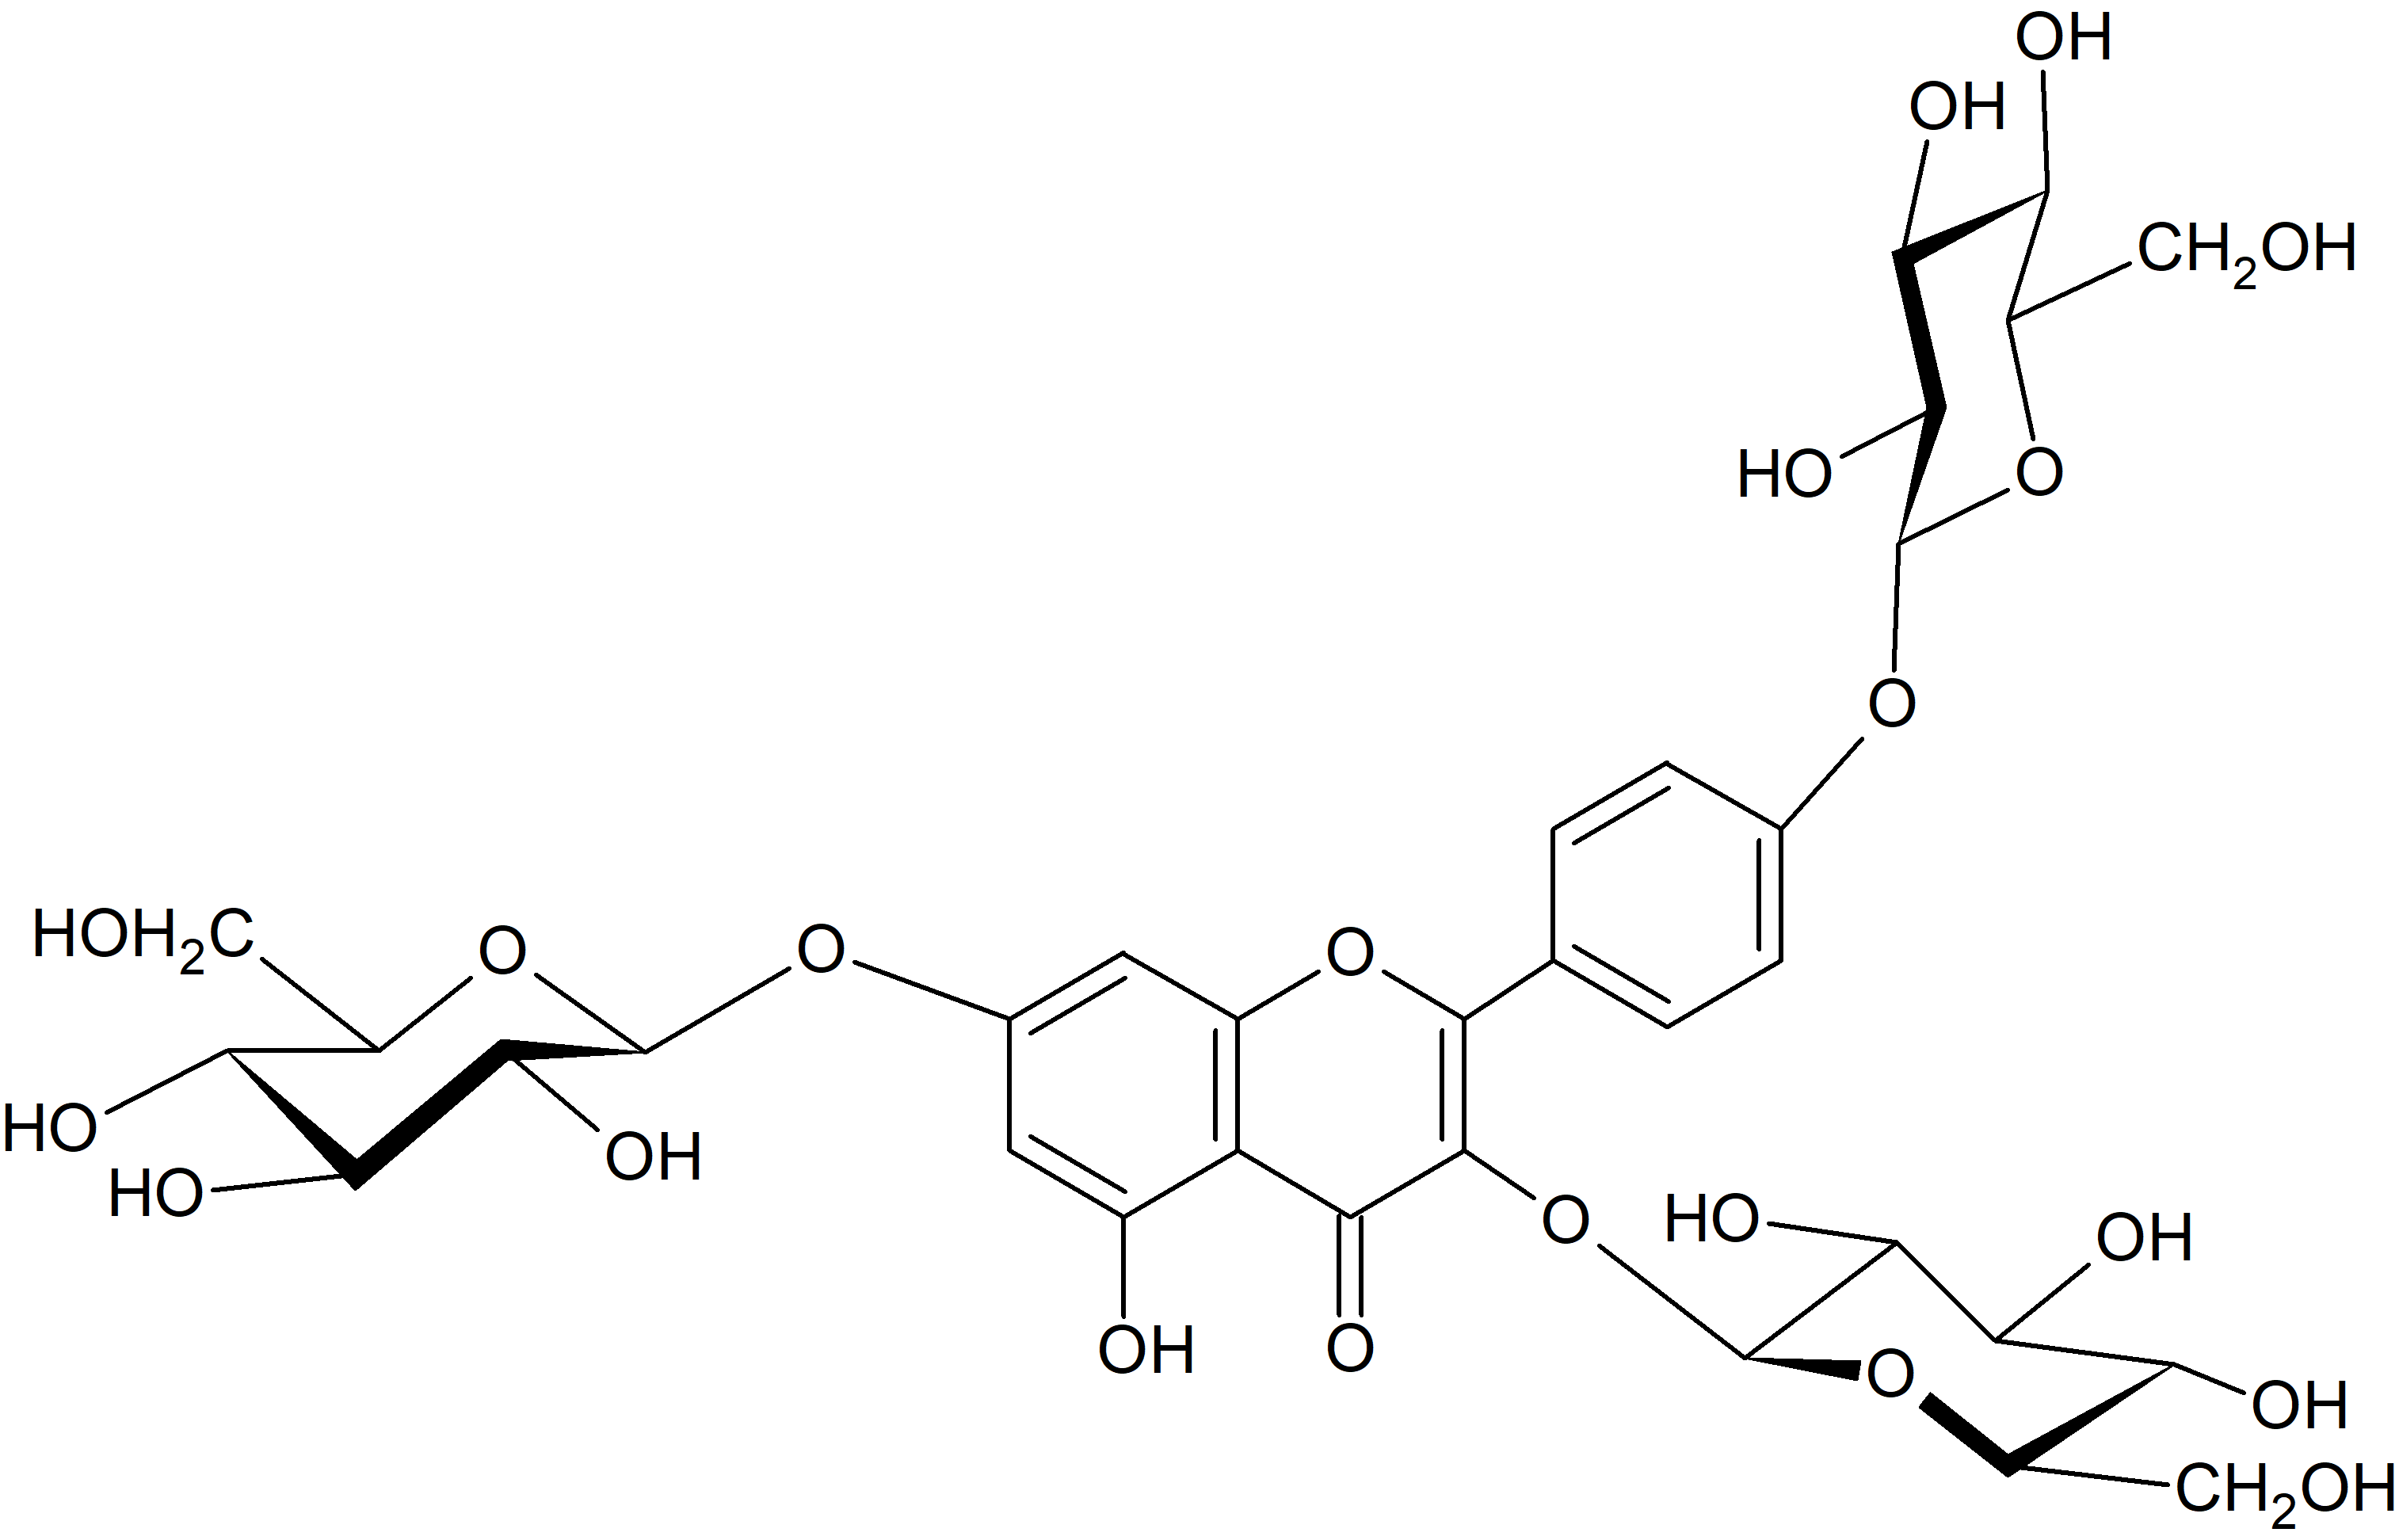 Kaempferol 3,7,4'-tri-O-glucoside